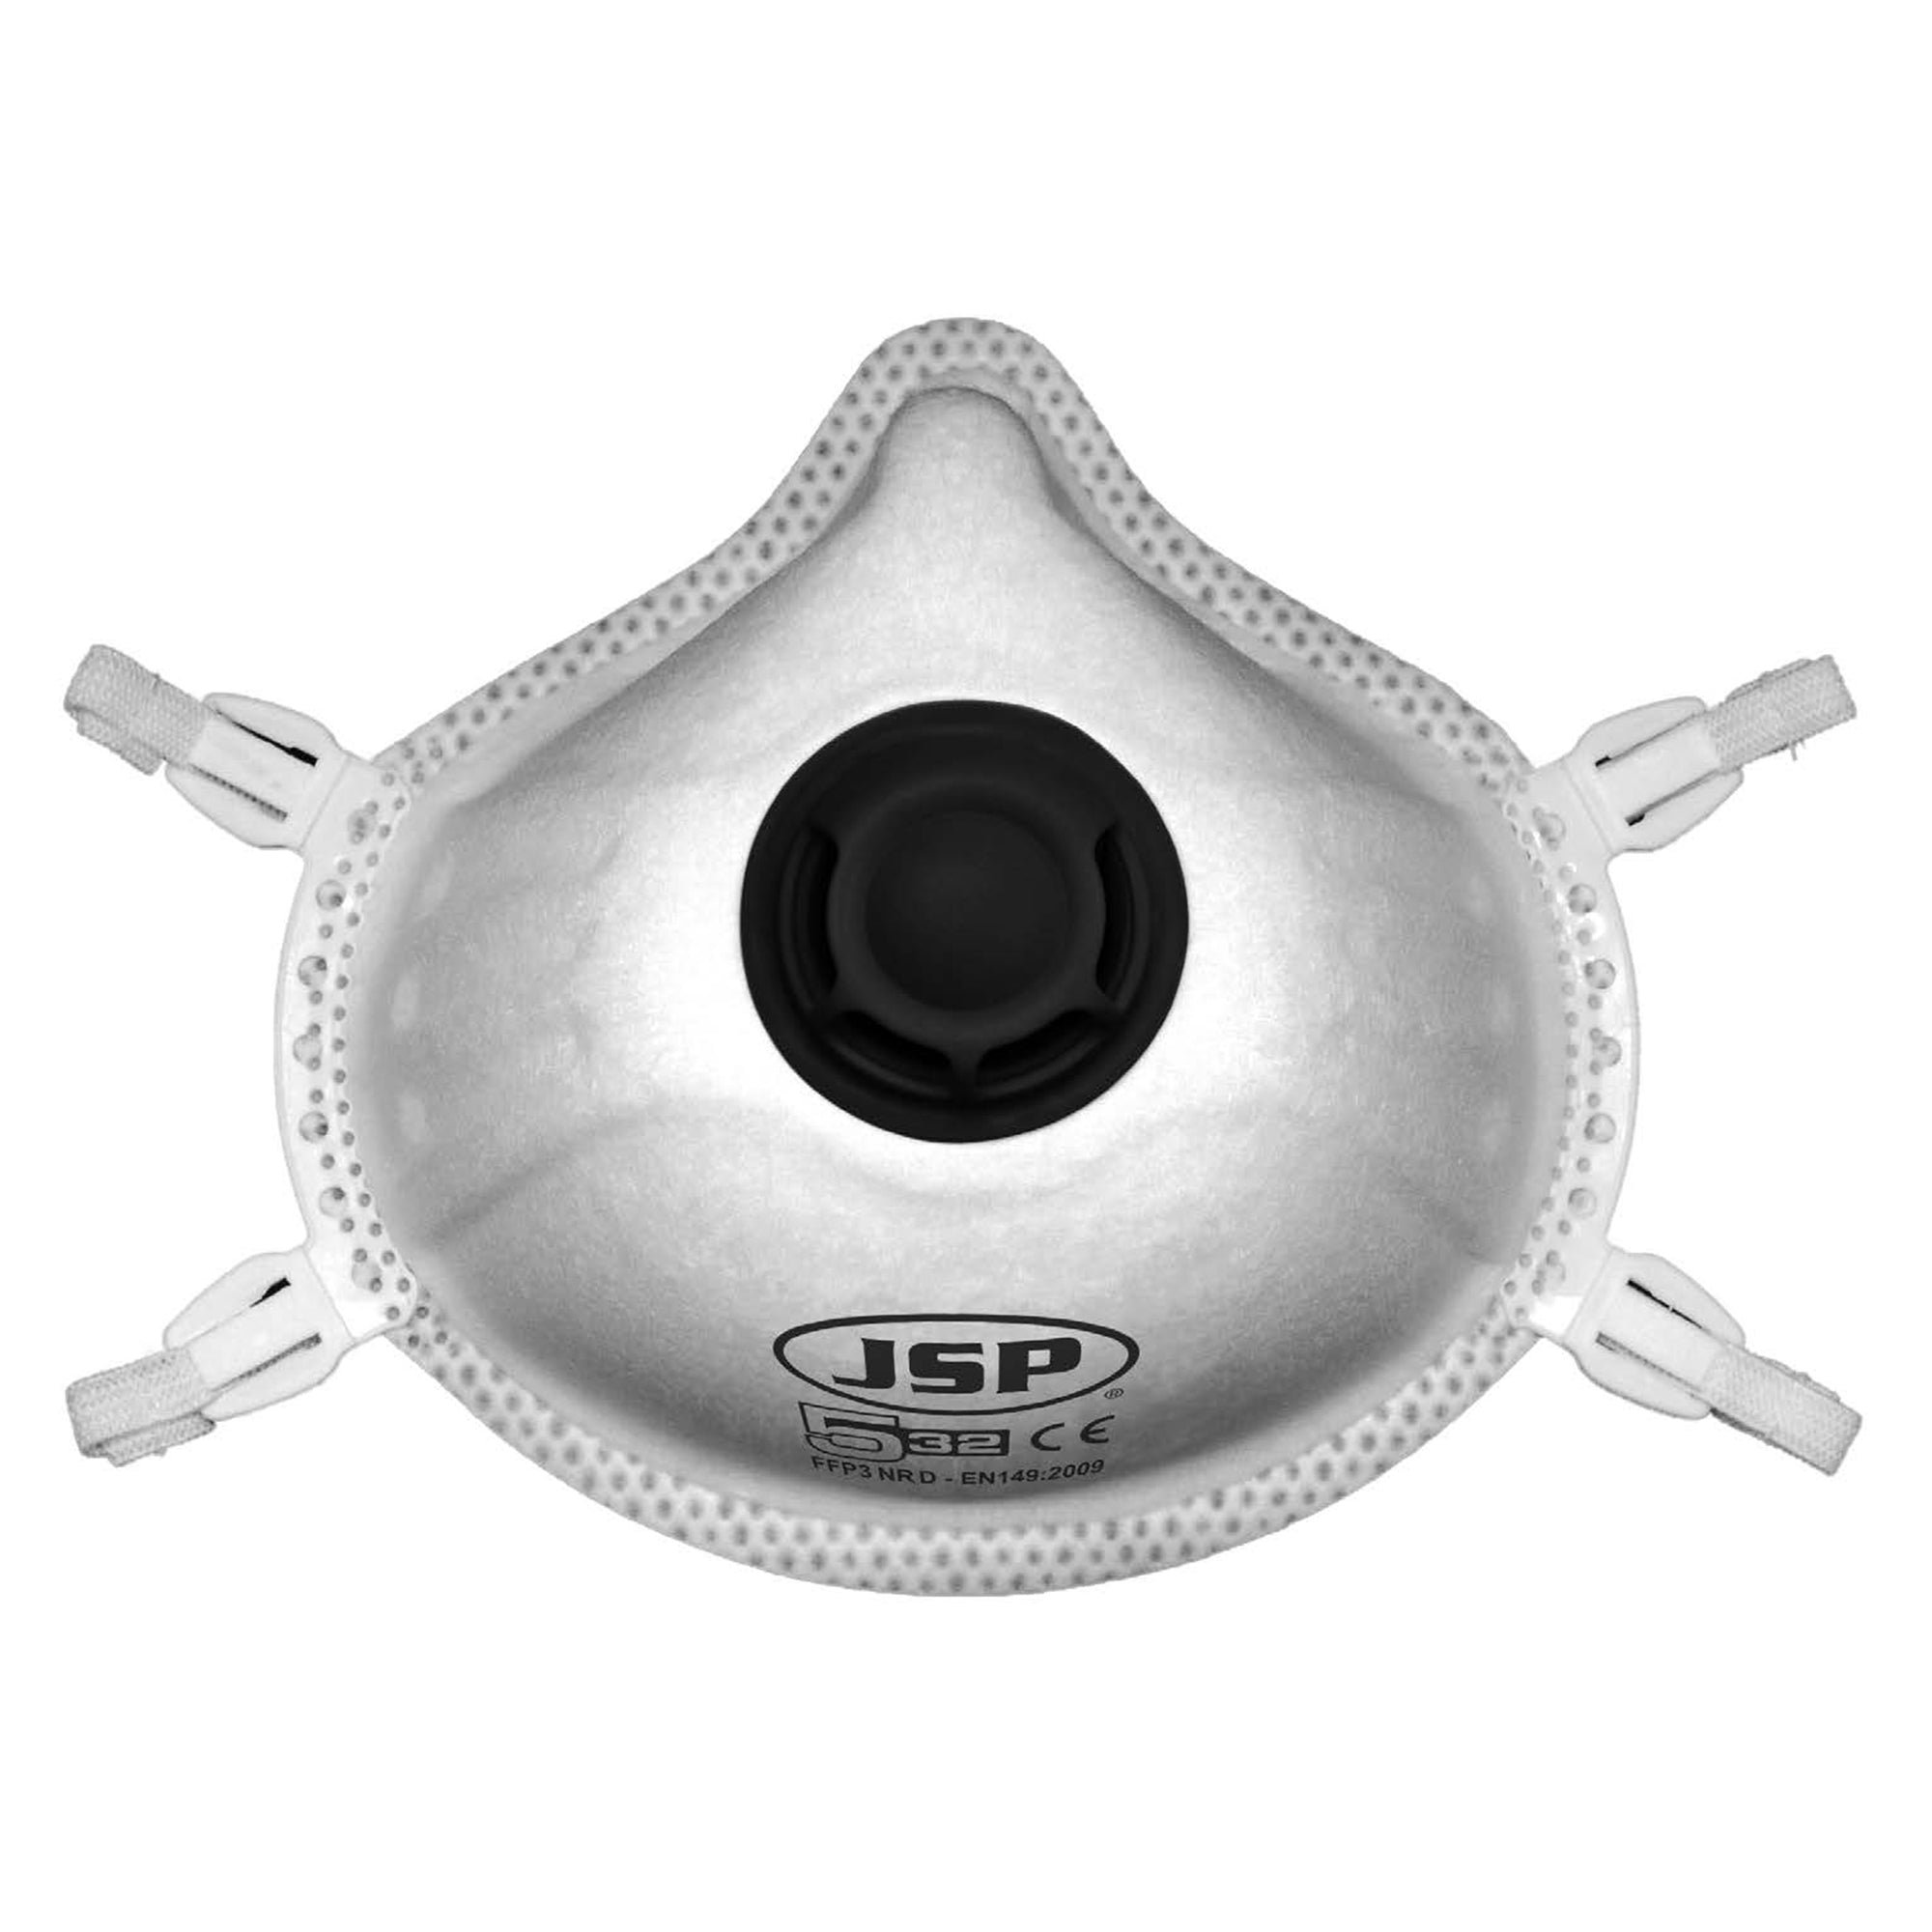 JSP FFP3 Moulded Disposable Face Mask - 532 (Box of 5)